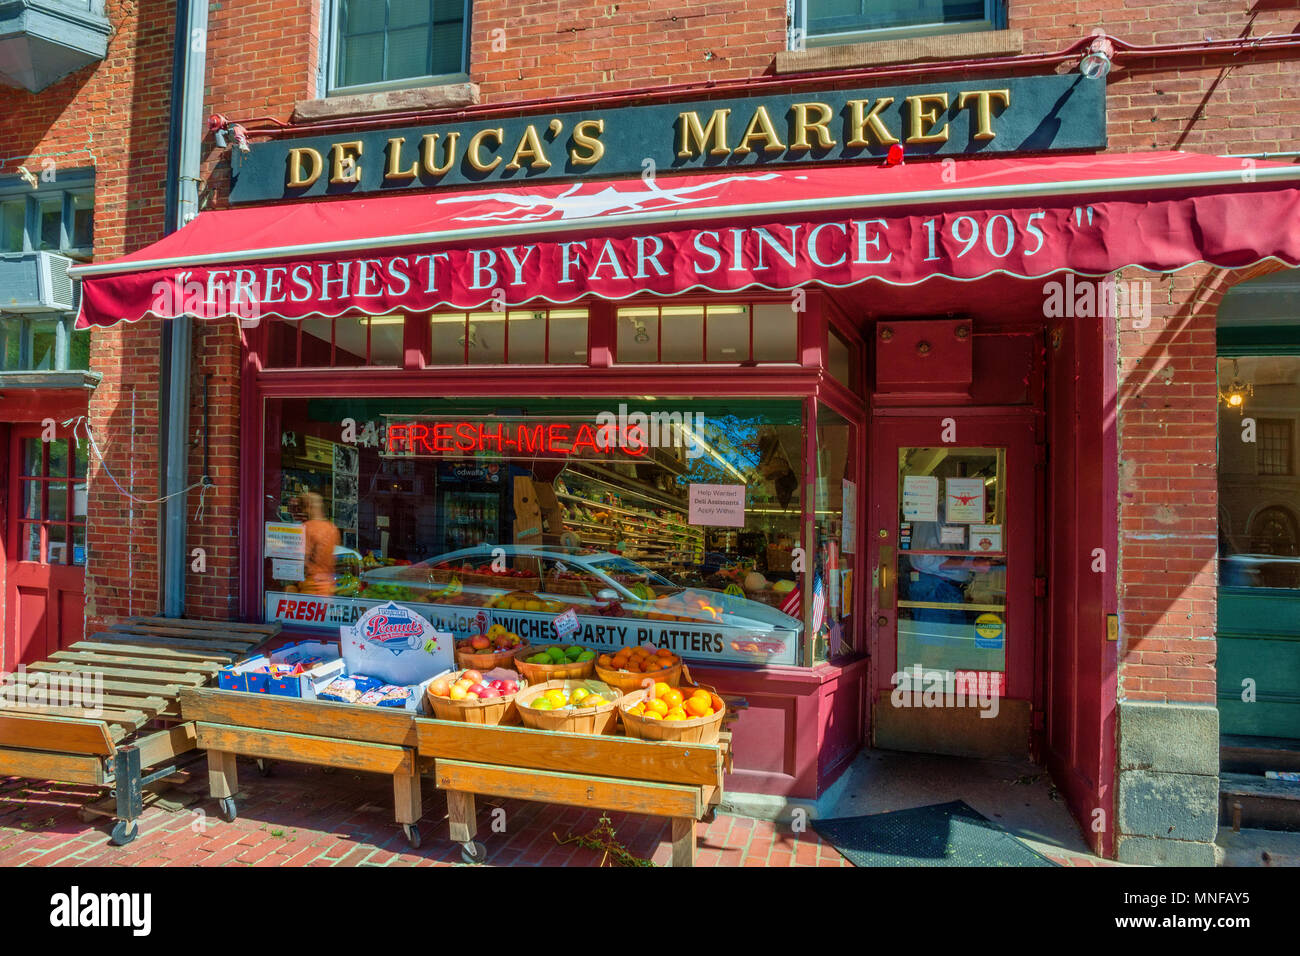 Boston, Massachusetts, EE.UU. - Septiembre 12, 2016: Beacon Hill's De Luca, el Mercado donde se puede comprar fresca reunirse, producir y tal. Estado en negocios sinc Foto de stock